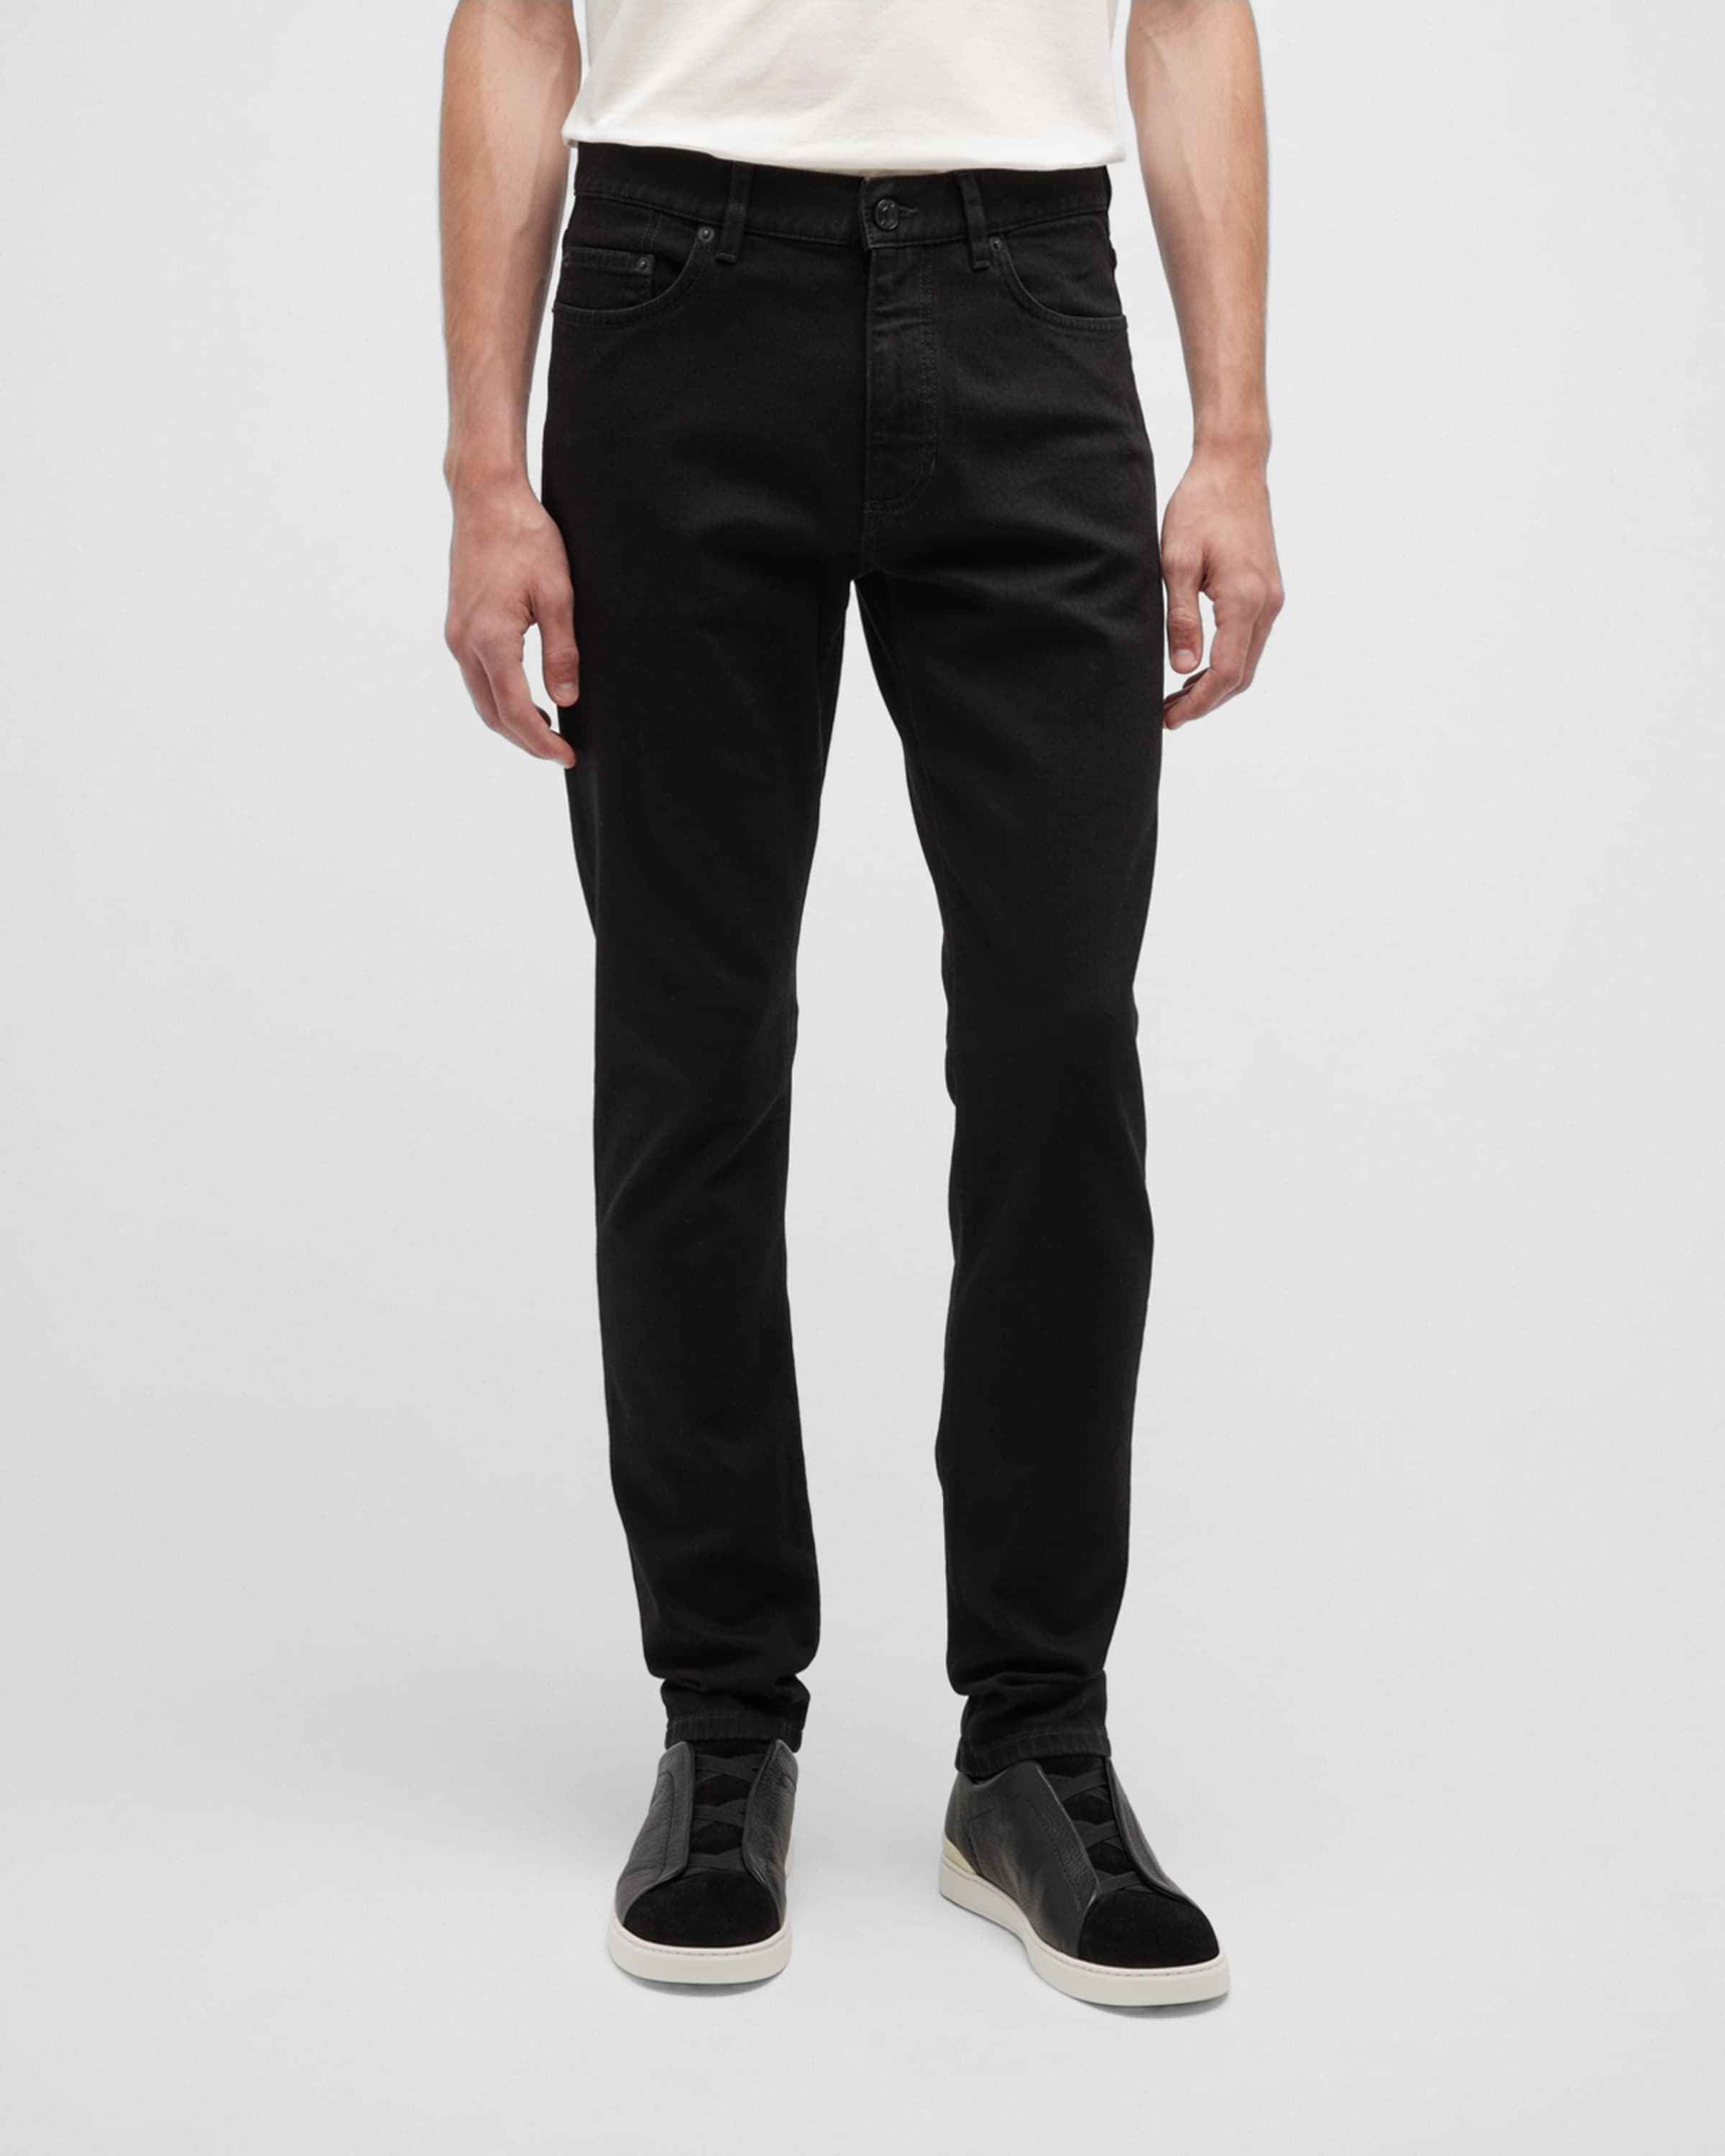 Men's 5-Pocket Black Wash Denim Jeans - 2